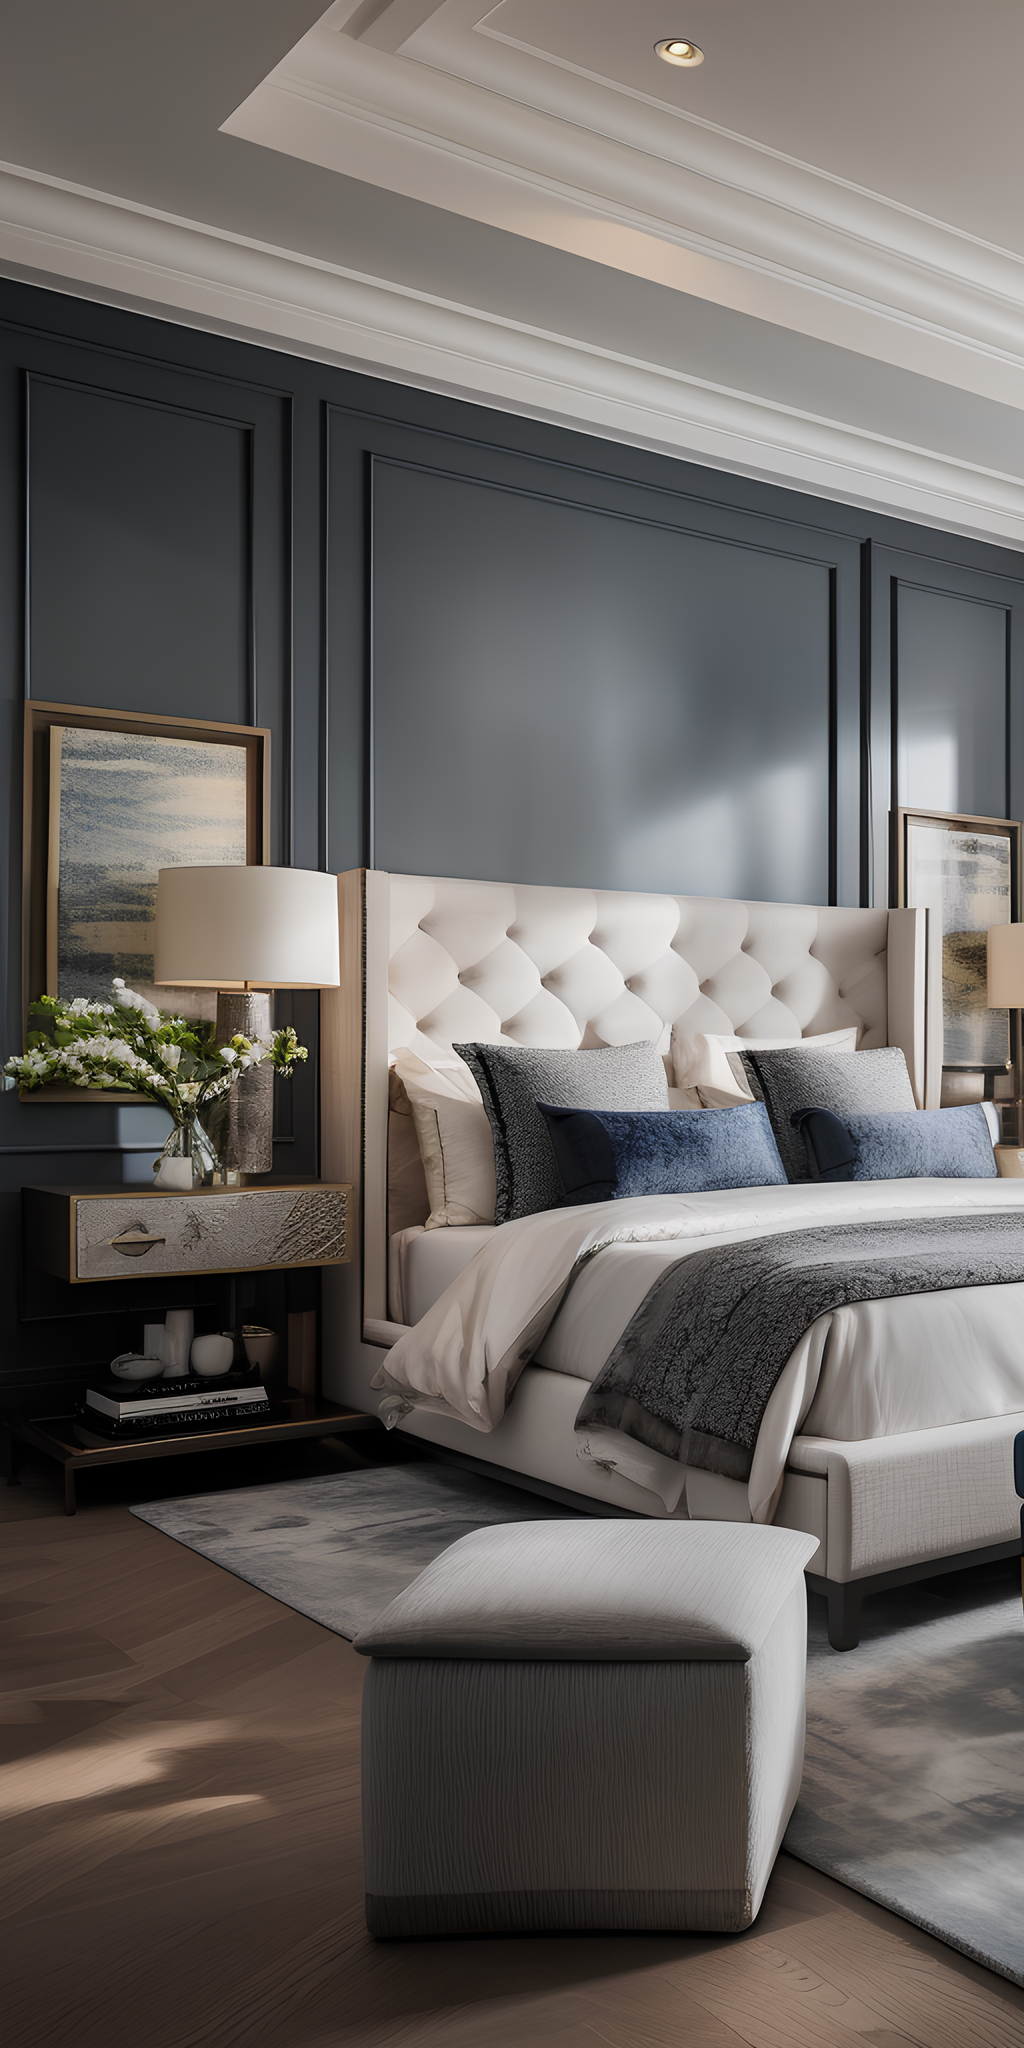 Pinnacle of comfort: luxury bedrooms